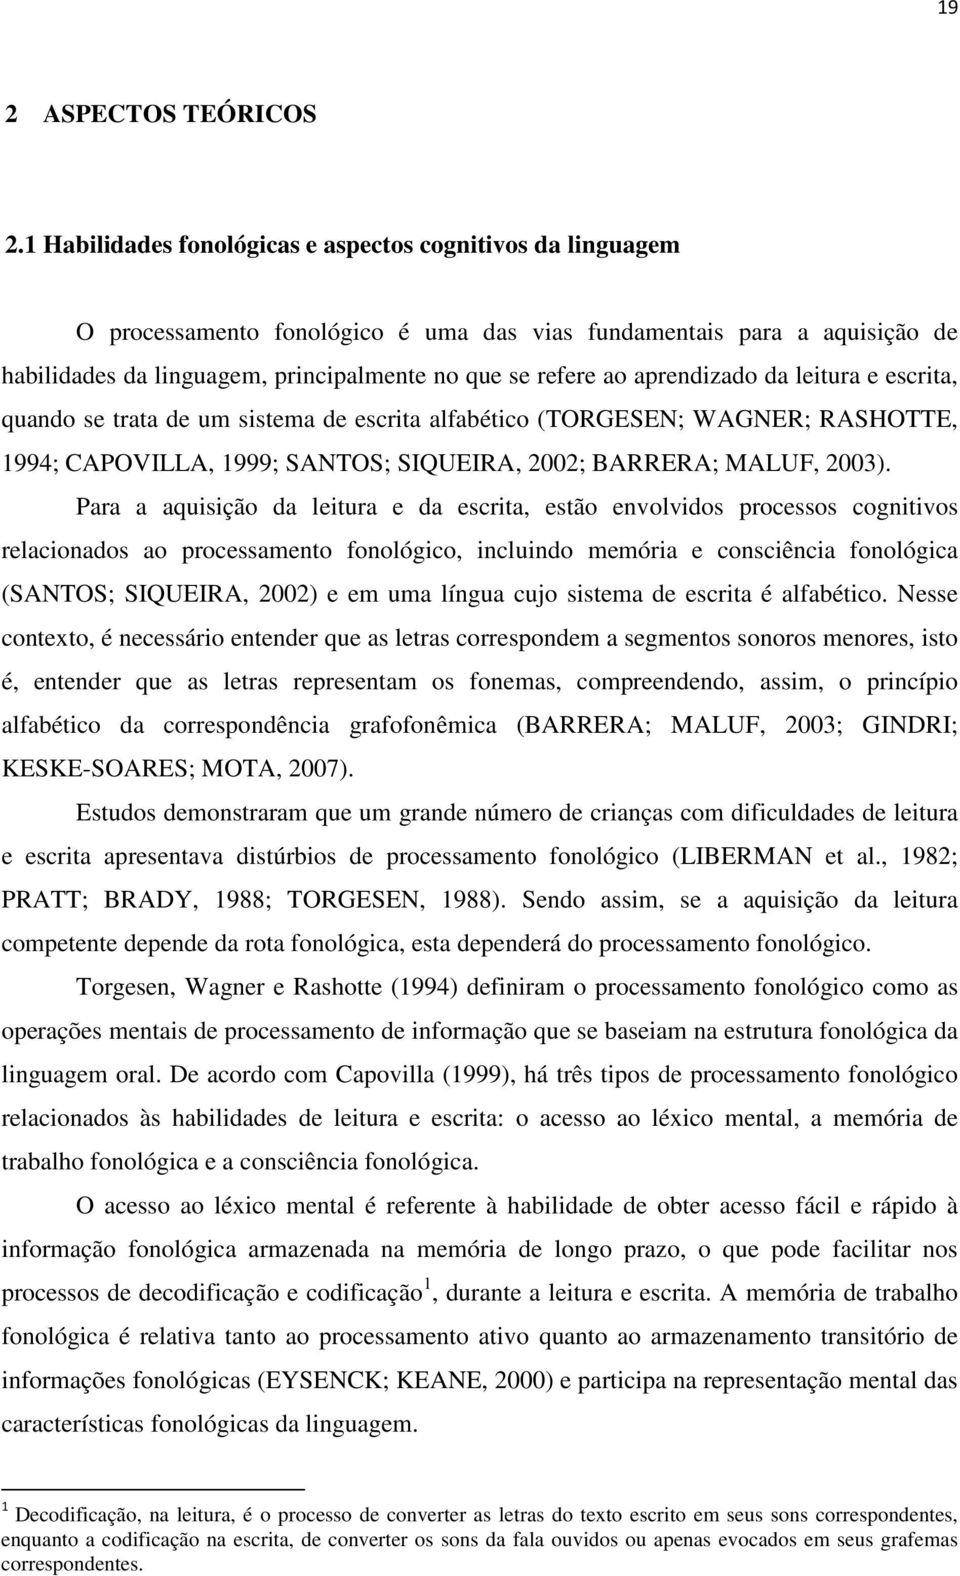 aprendizado da leitura e escrita, quando se trata de um sistema de escrita alfabético (TORGESEN; WAGNER; RASHOTTE, 1994; CAPOVILLA, 1999; SANTOS; SIQUEIRA, 2002; BARRERA; MALUF, 2003).